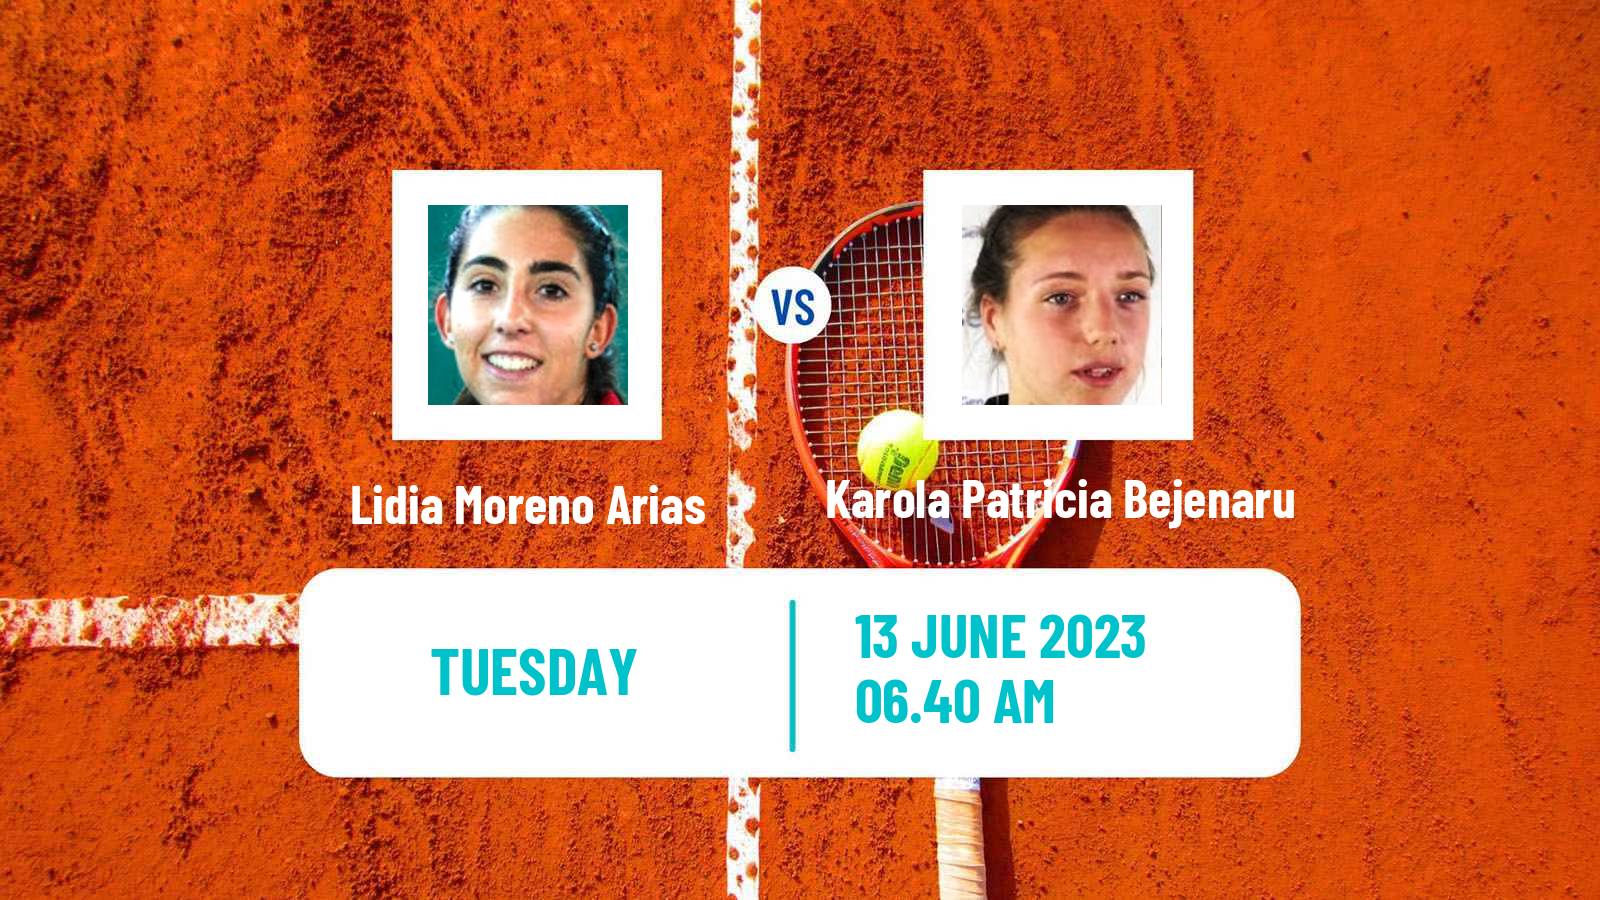 Tennis ITF W60 Madrid Women Lidia Moreno Arias - Karola Patricia Bejenaru